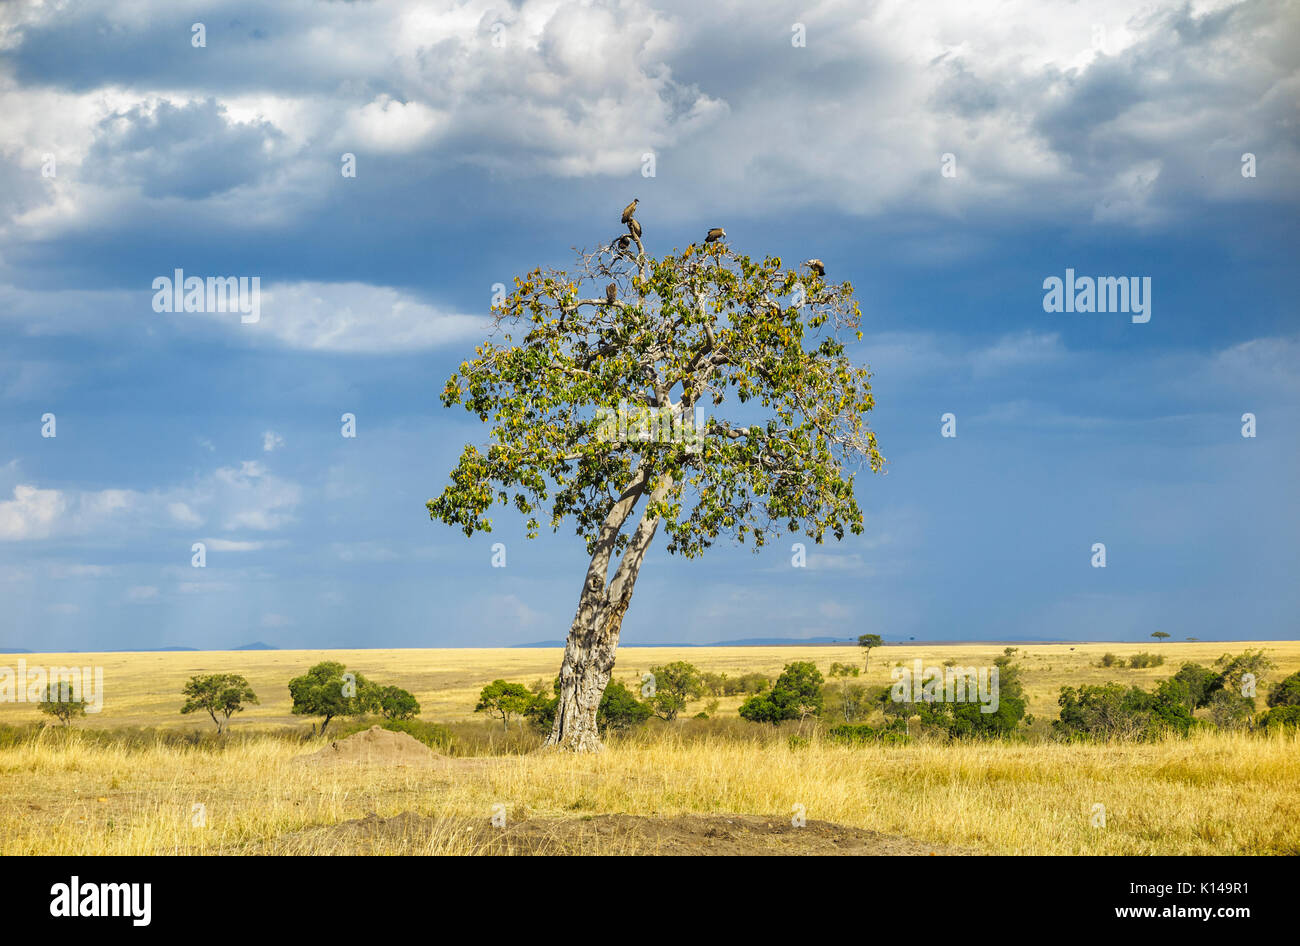 Paysage de prairies de savane dans le Masai Mara, au Kenya avec les vautours se percher dans un arbre contre un ciel nuageux à l'approche de nuages de pluie Banque D'Images